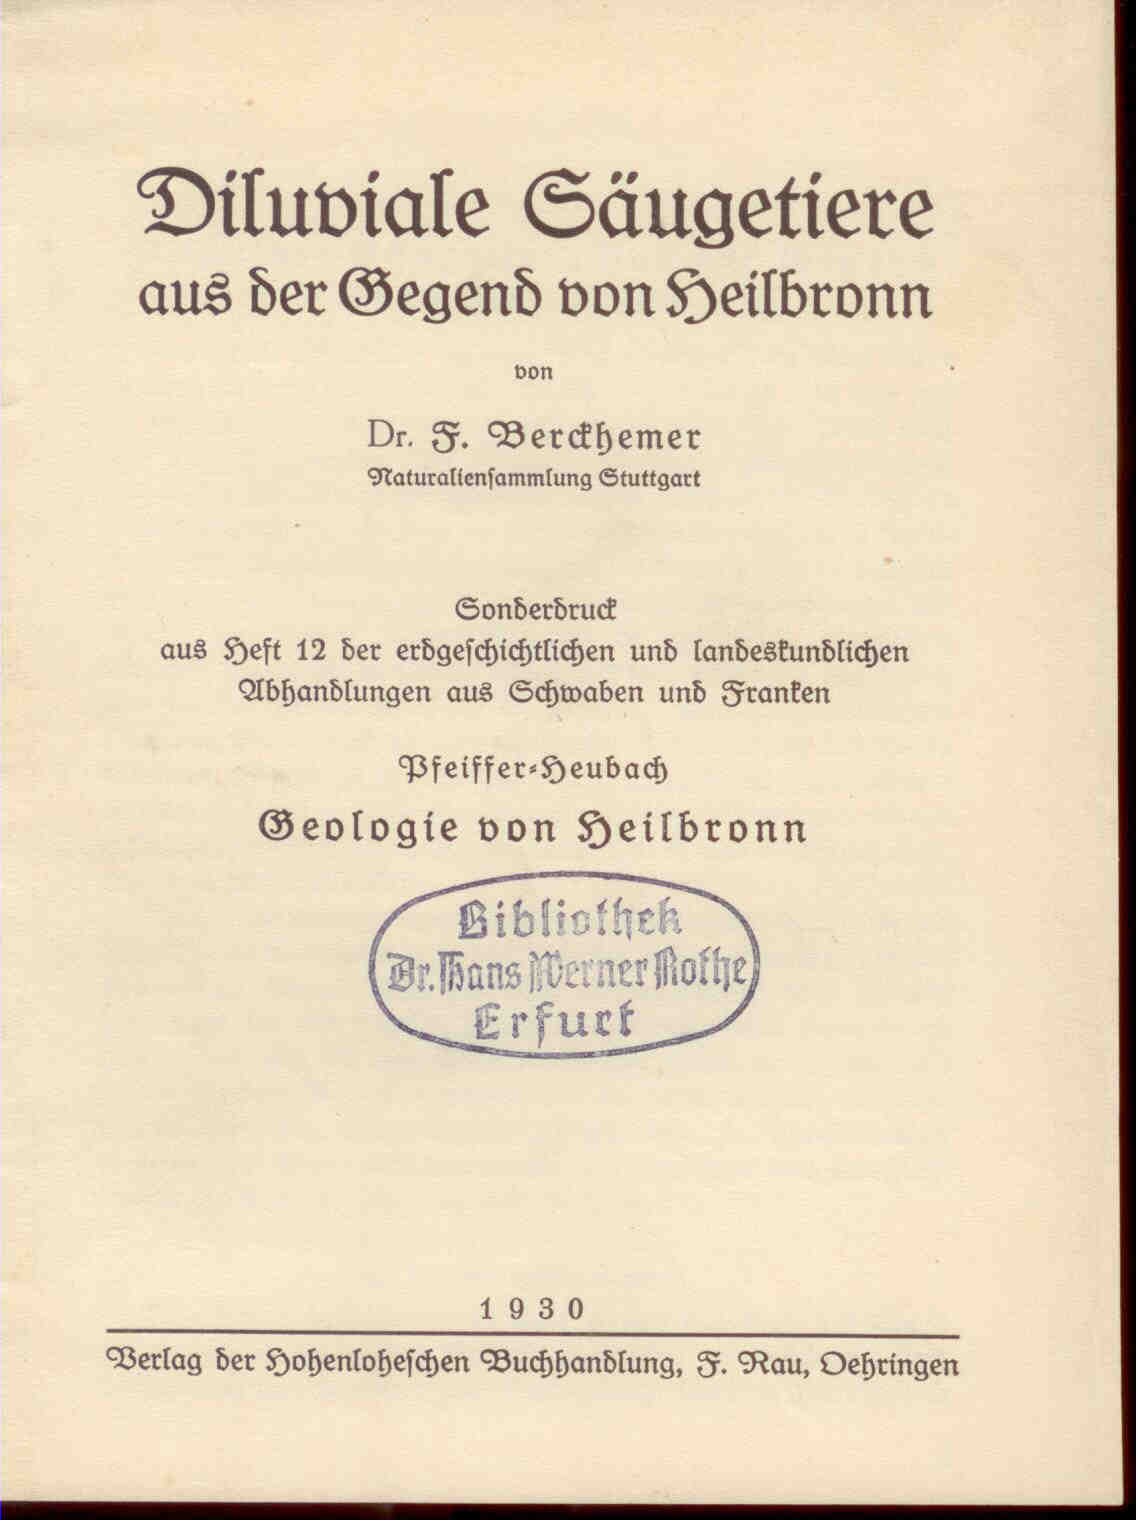 Berckhemer, Dr. F.: Diluviale Säugetiere aus der Gegend von Heilbronn